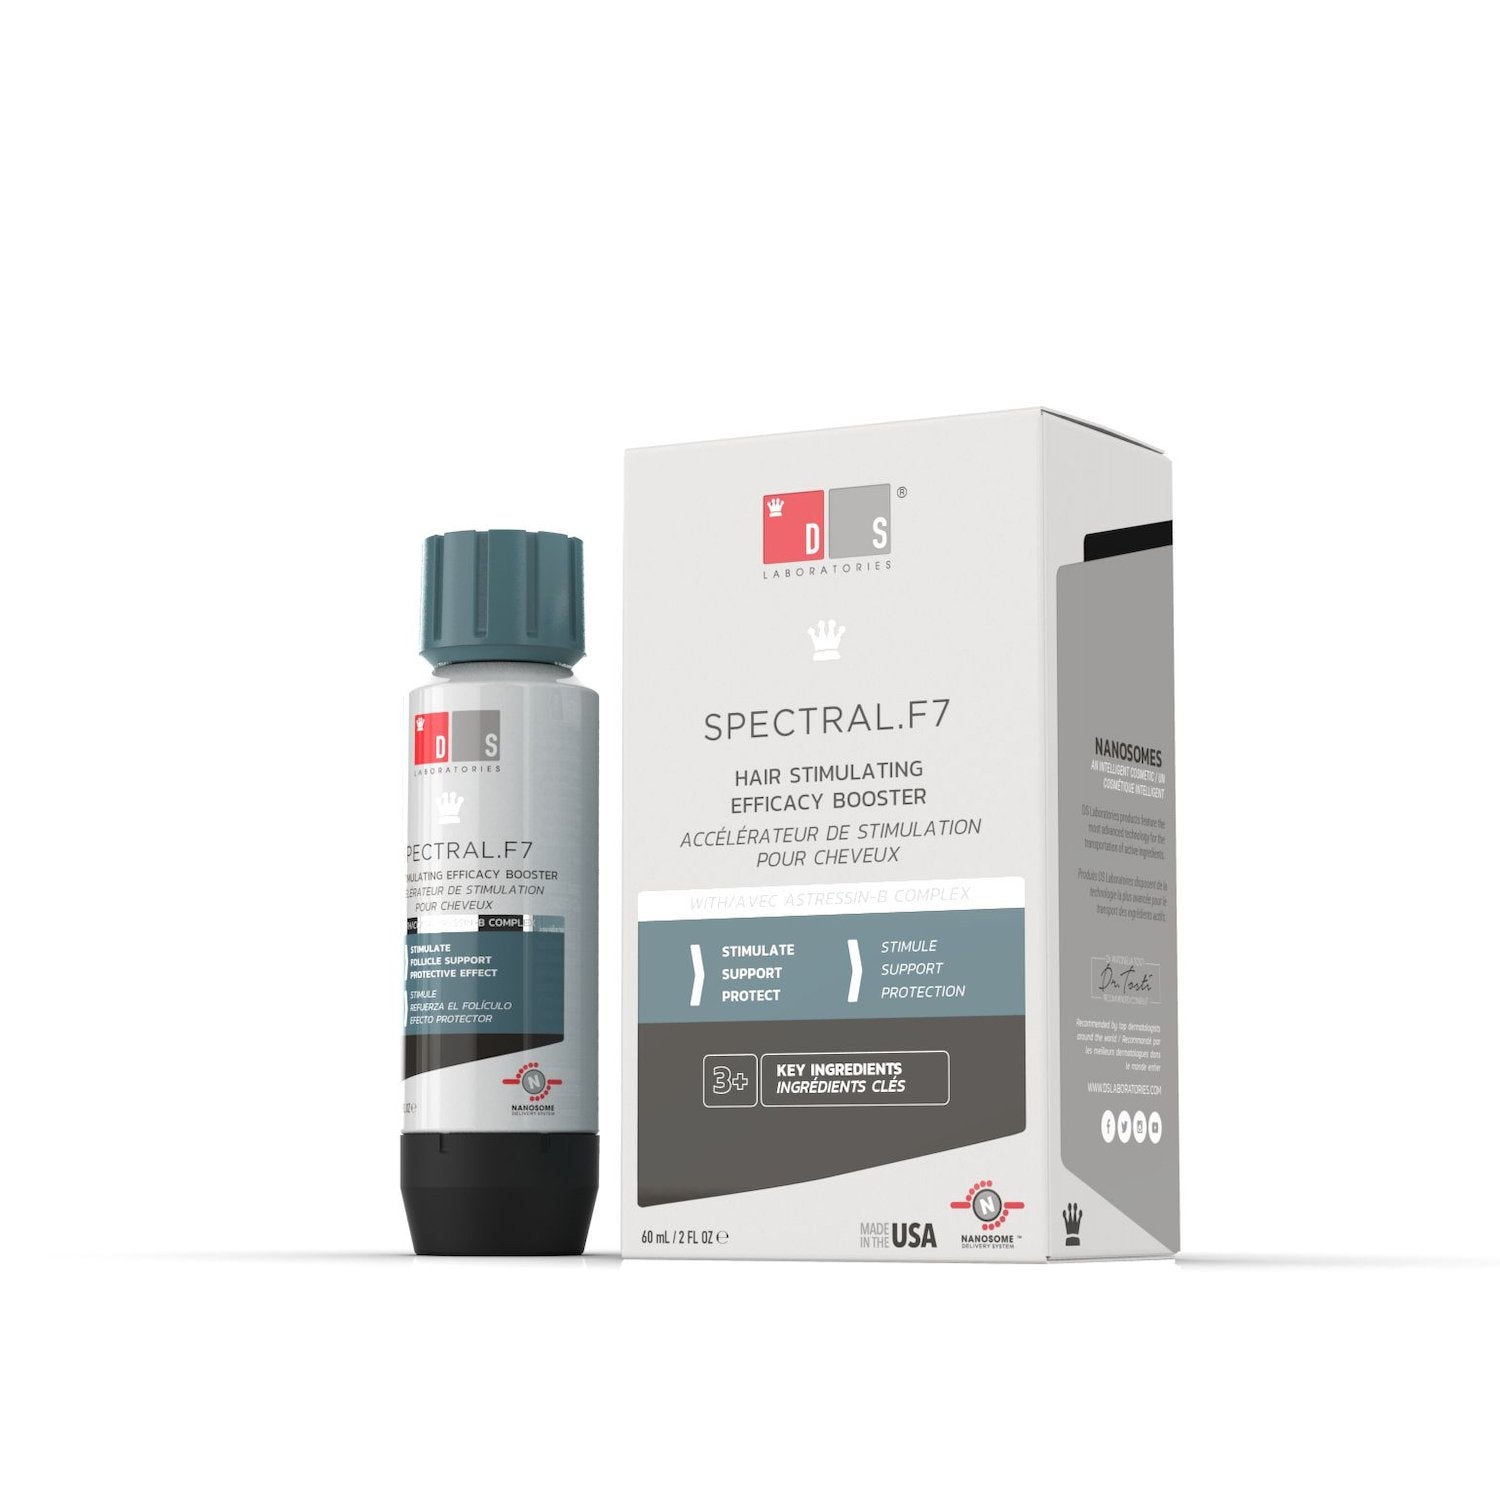 SPECTRAL.F7® | Zusatzbehandlung gegen Haarausfall mit Astressin-B